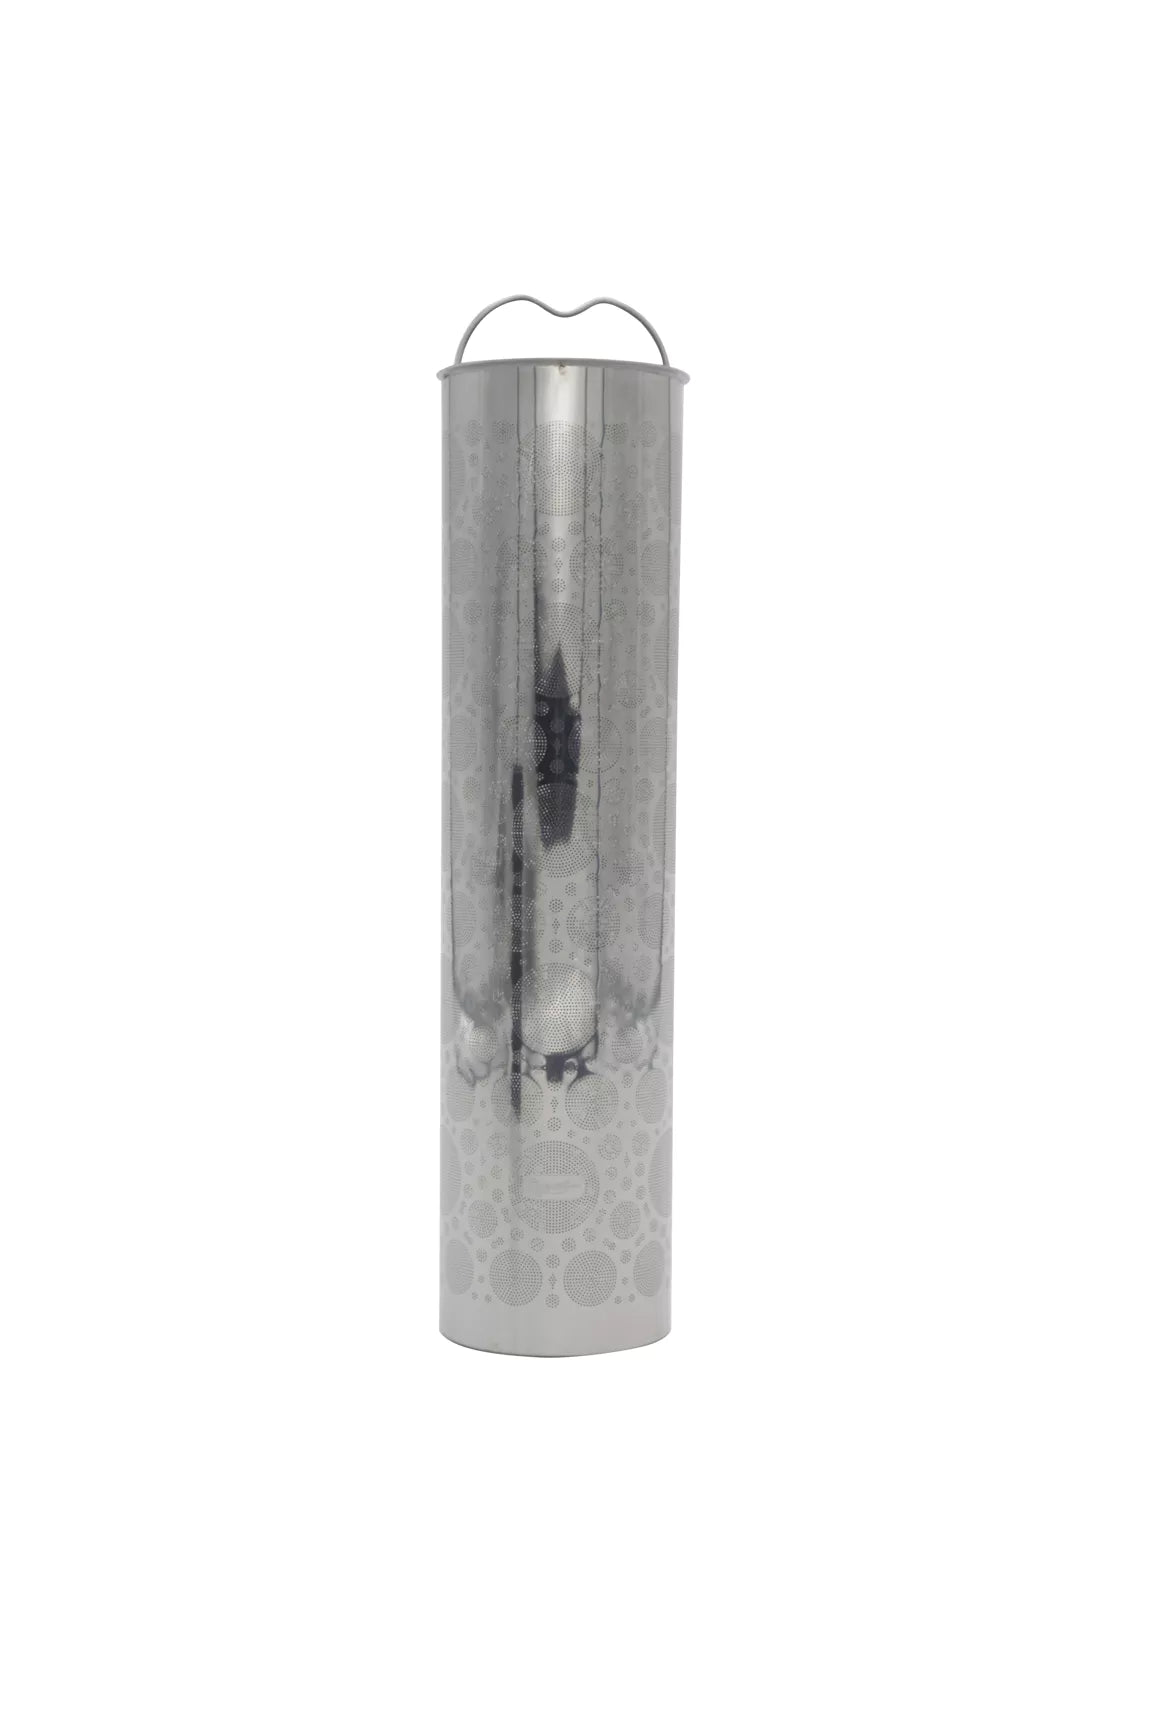 Termo infusionador vidrio Flores de cerezo, 350ml. Herbolario La Trementina